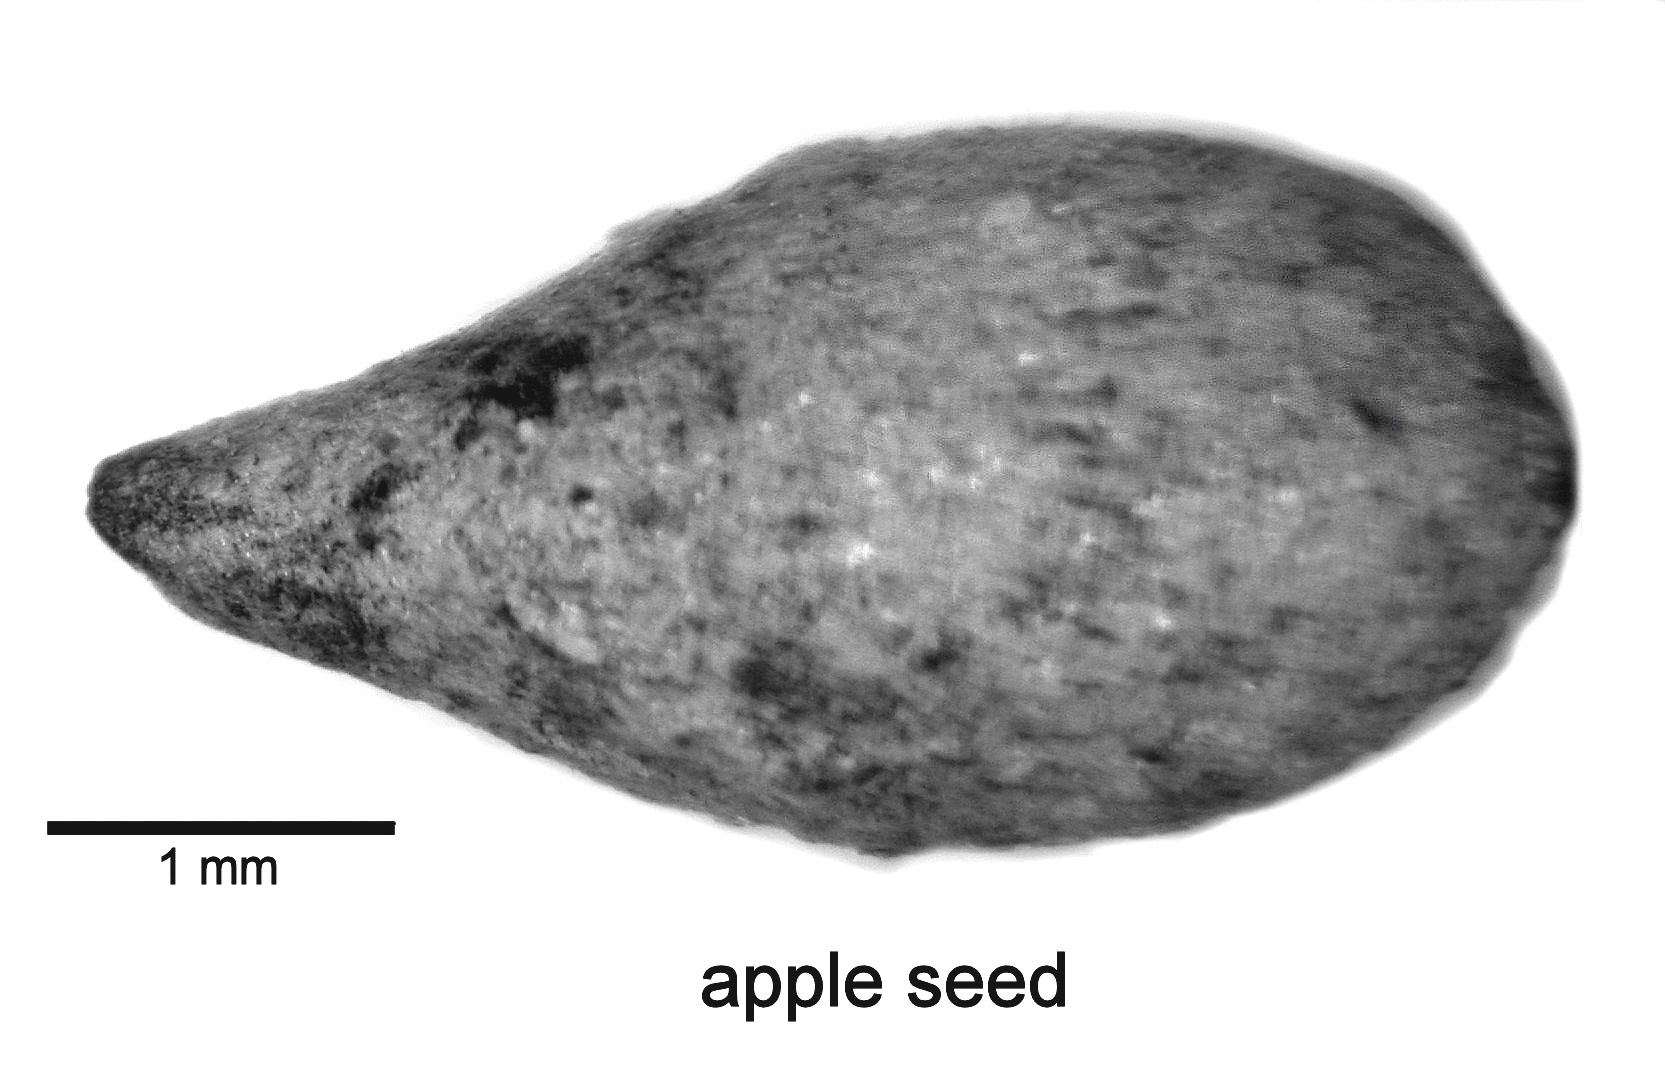 Image of apple seed